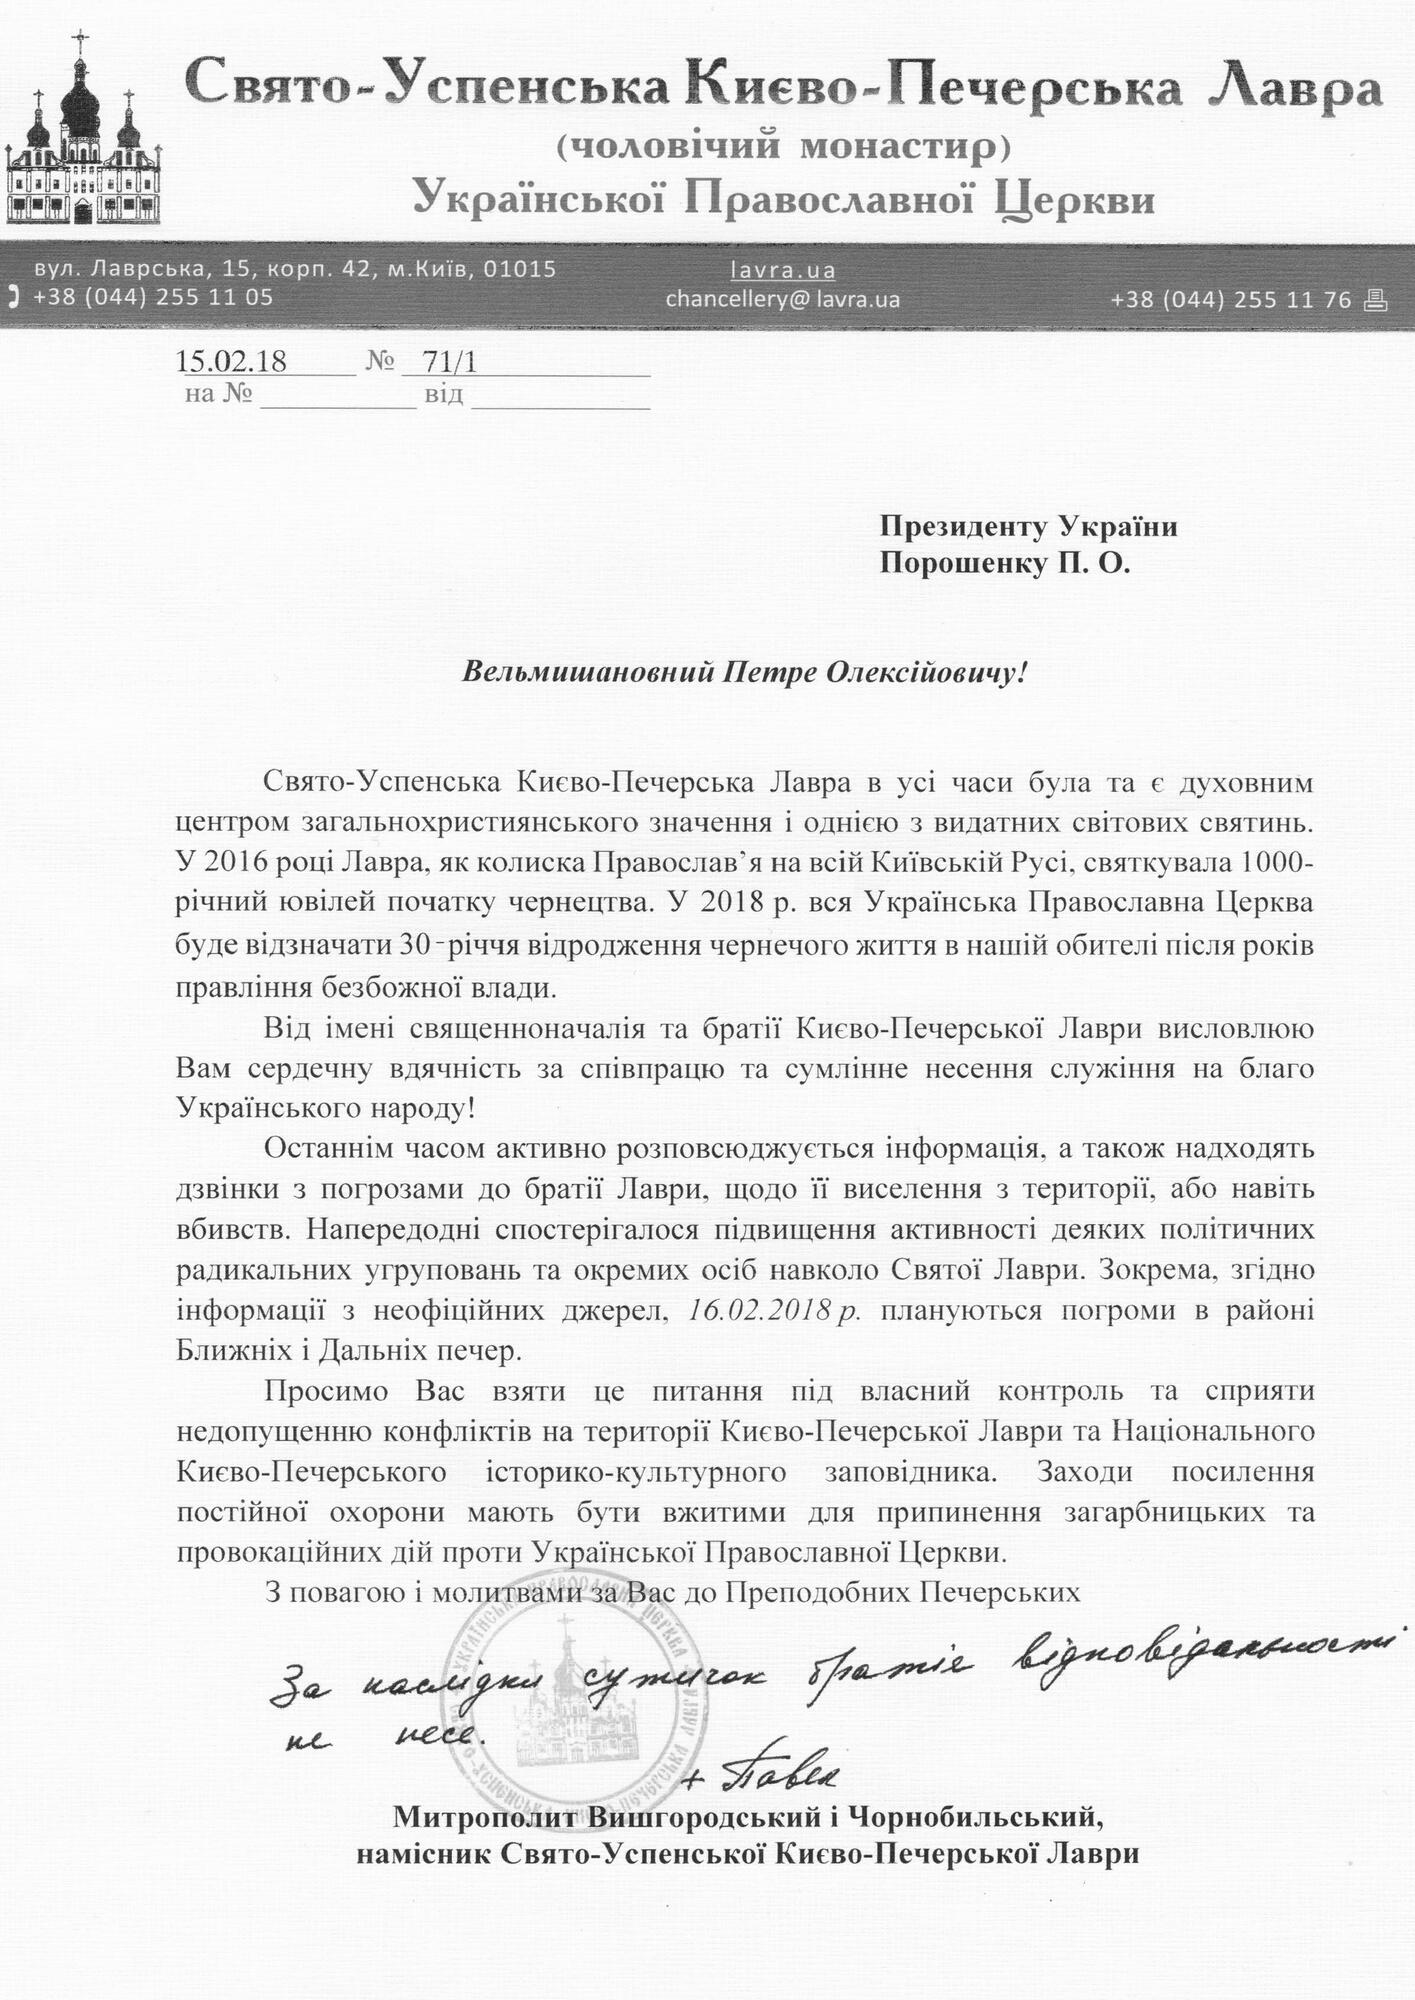 Киево-Печерская лавра заявила об угрозе нападения